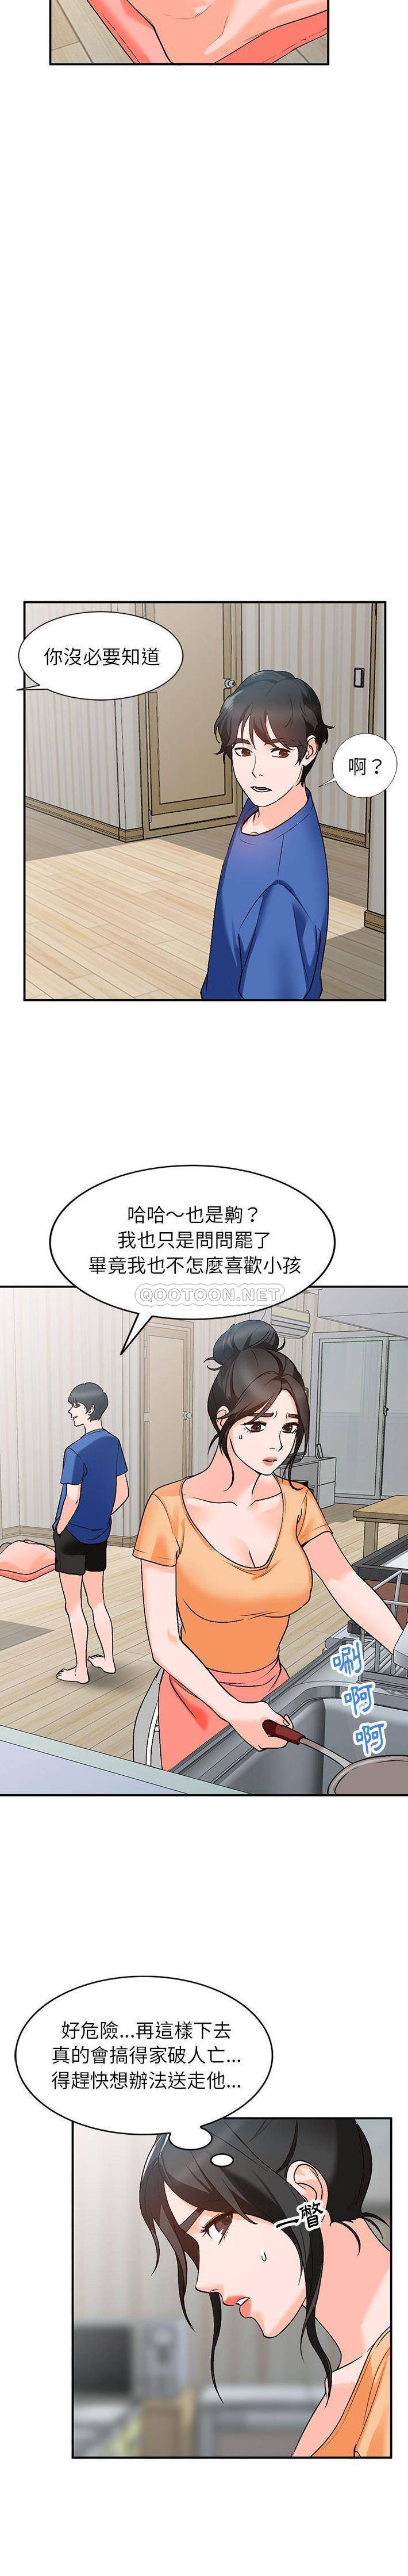 韩国污漫画 她們的小秘密(小鎮上的女人們) 第10话 6